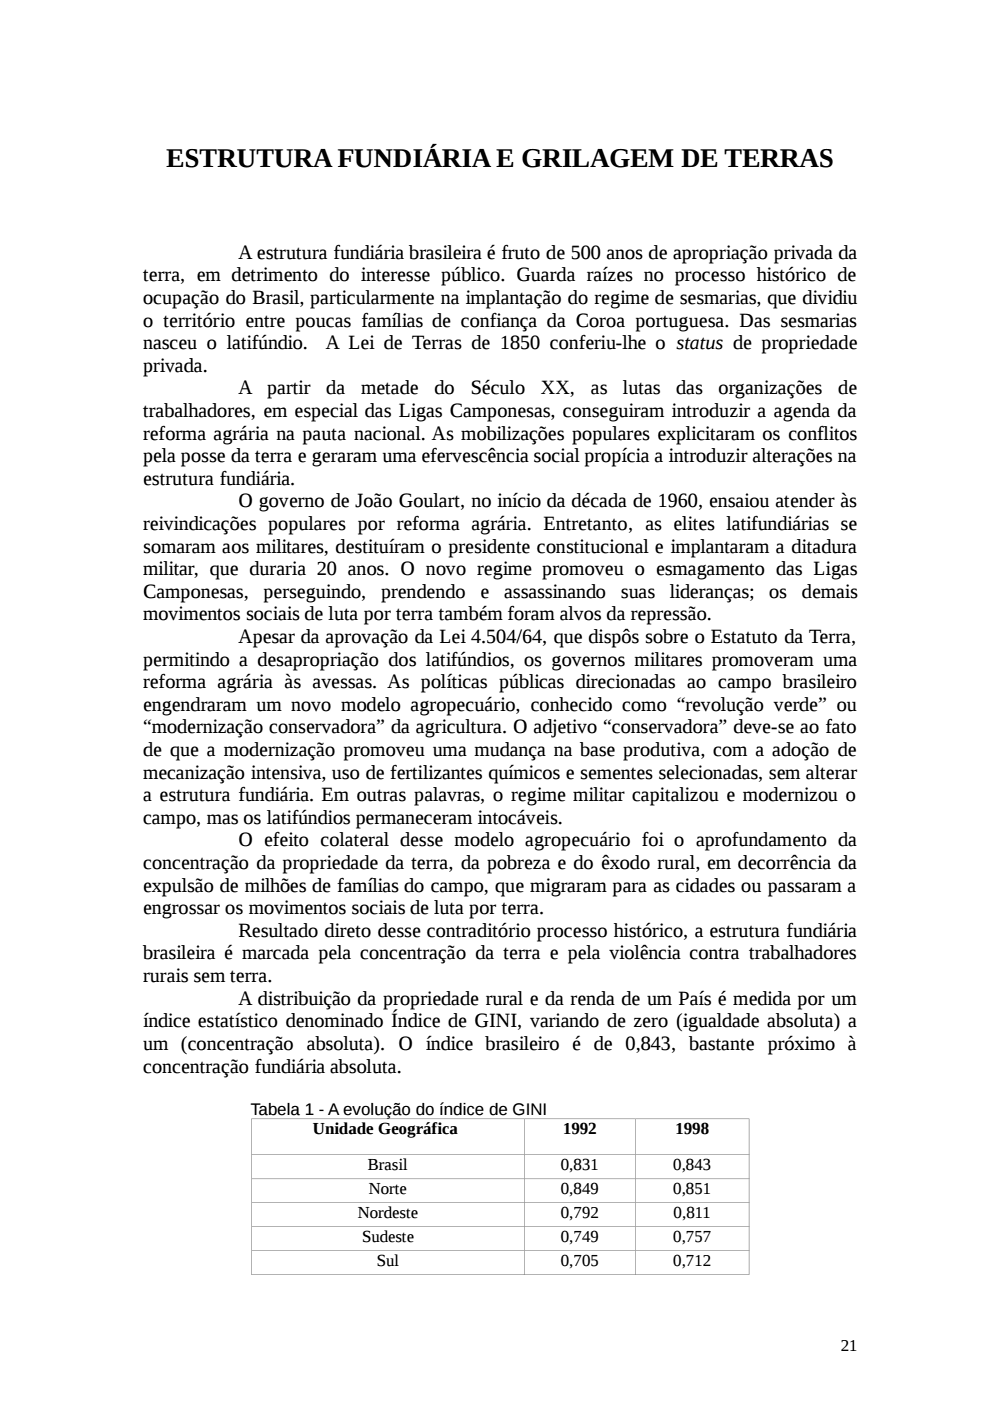 Page 21 from Relatório final da comissão